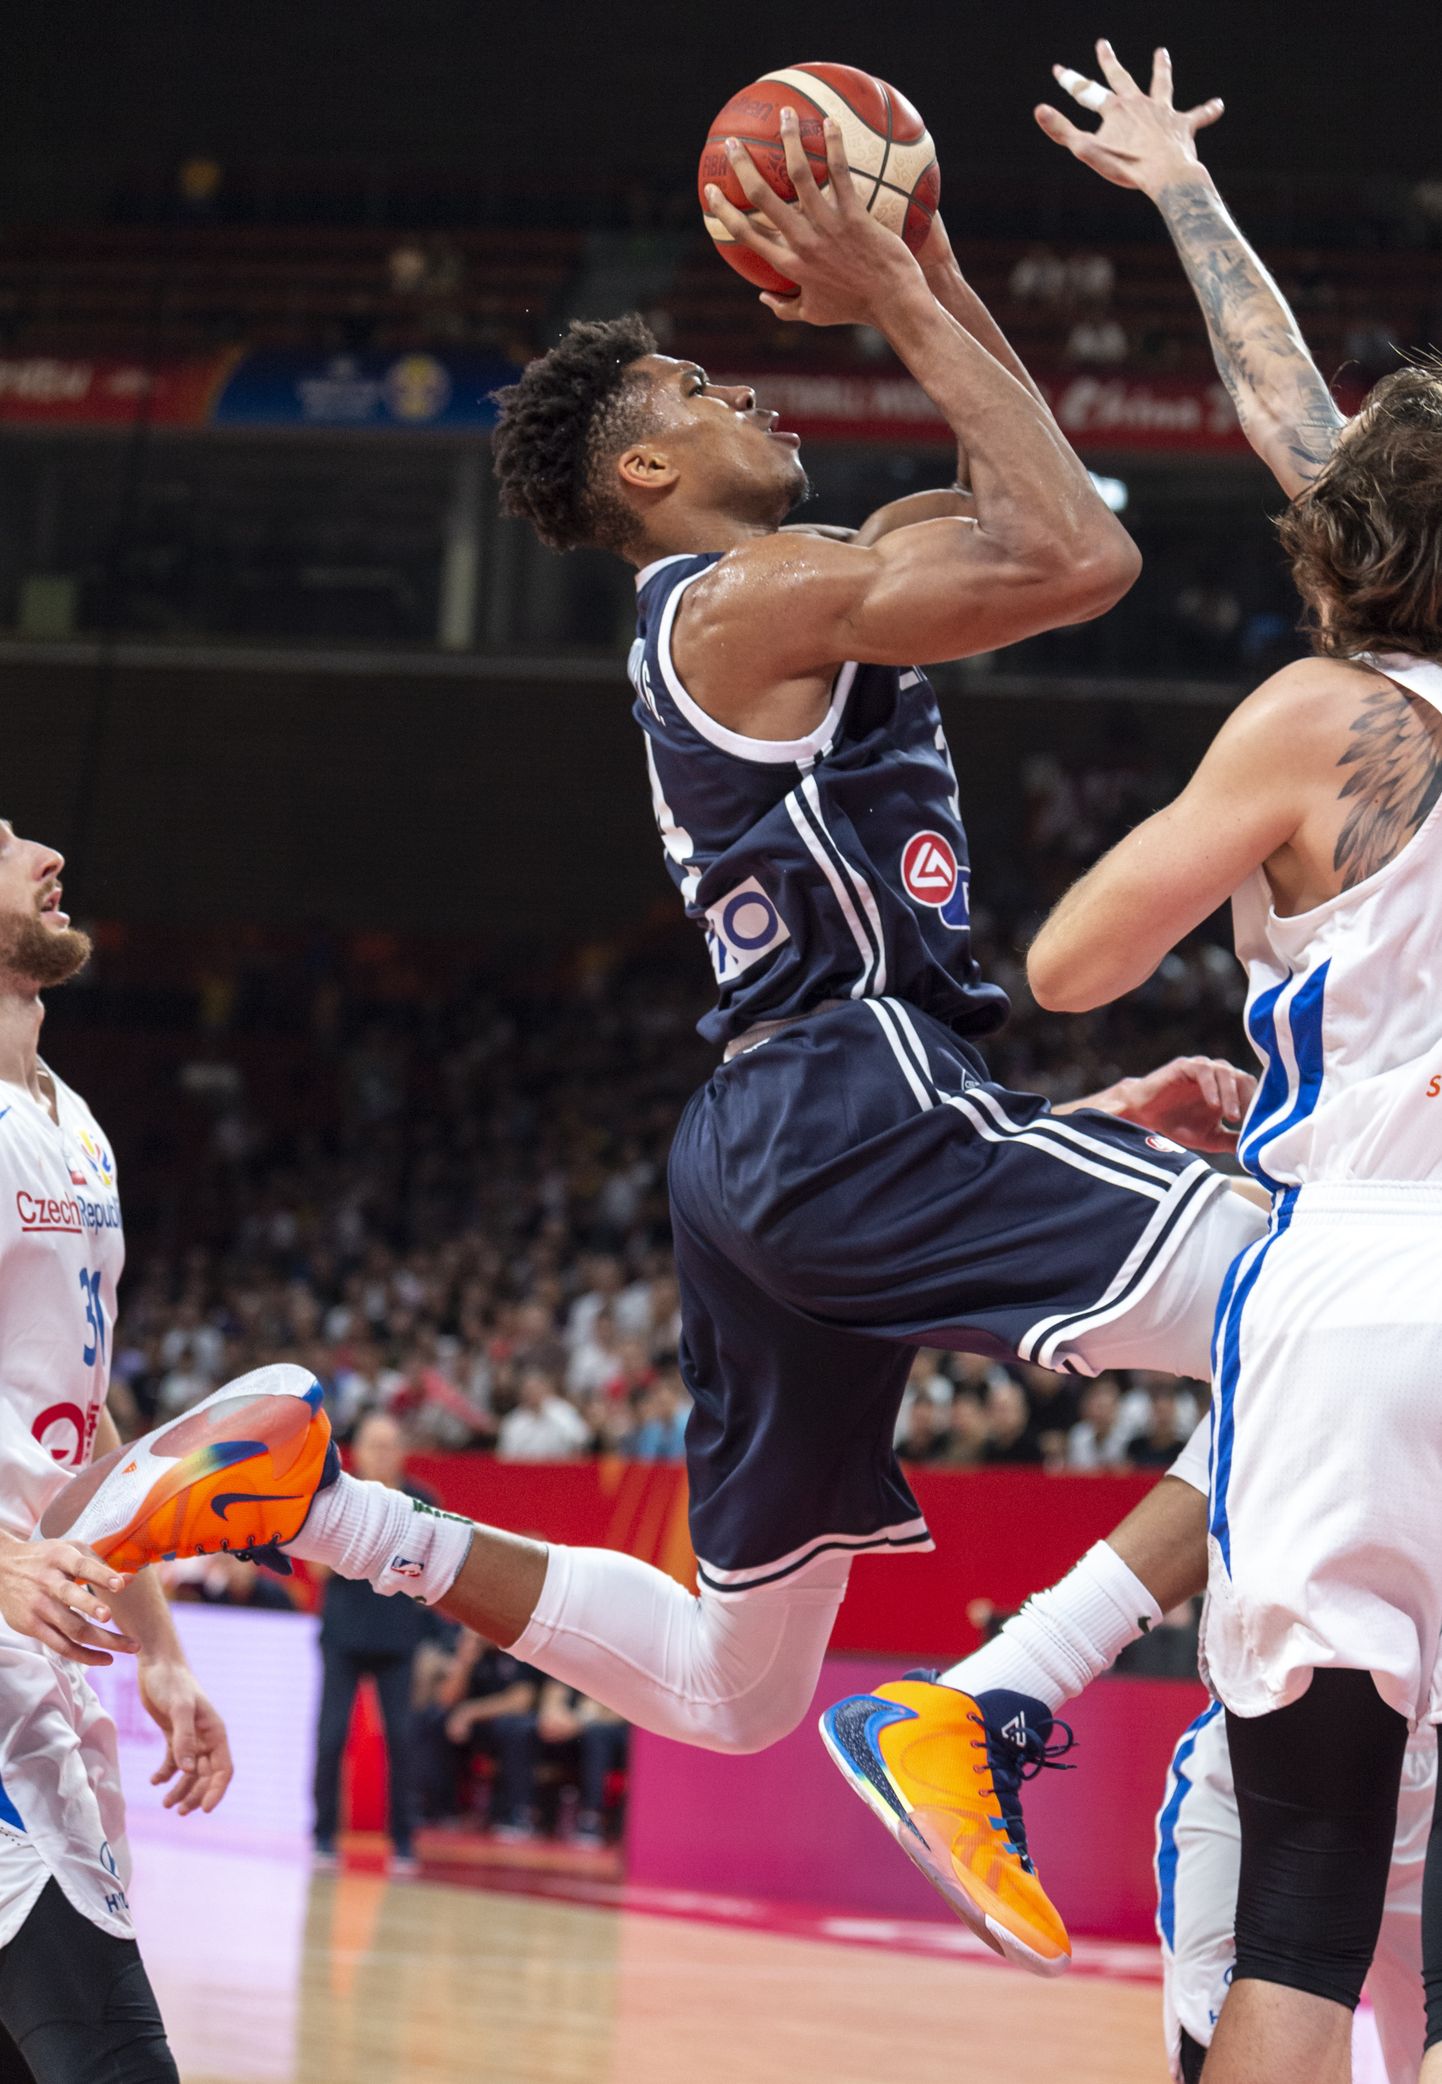 Kreeka NBA superstaar Giannis Antetokoumpo ei suutnud kreeklasi kaheksa hulka aidata.